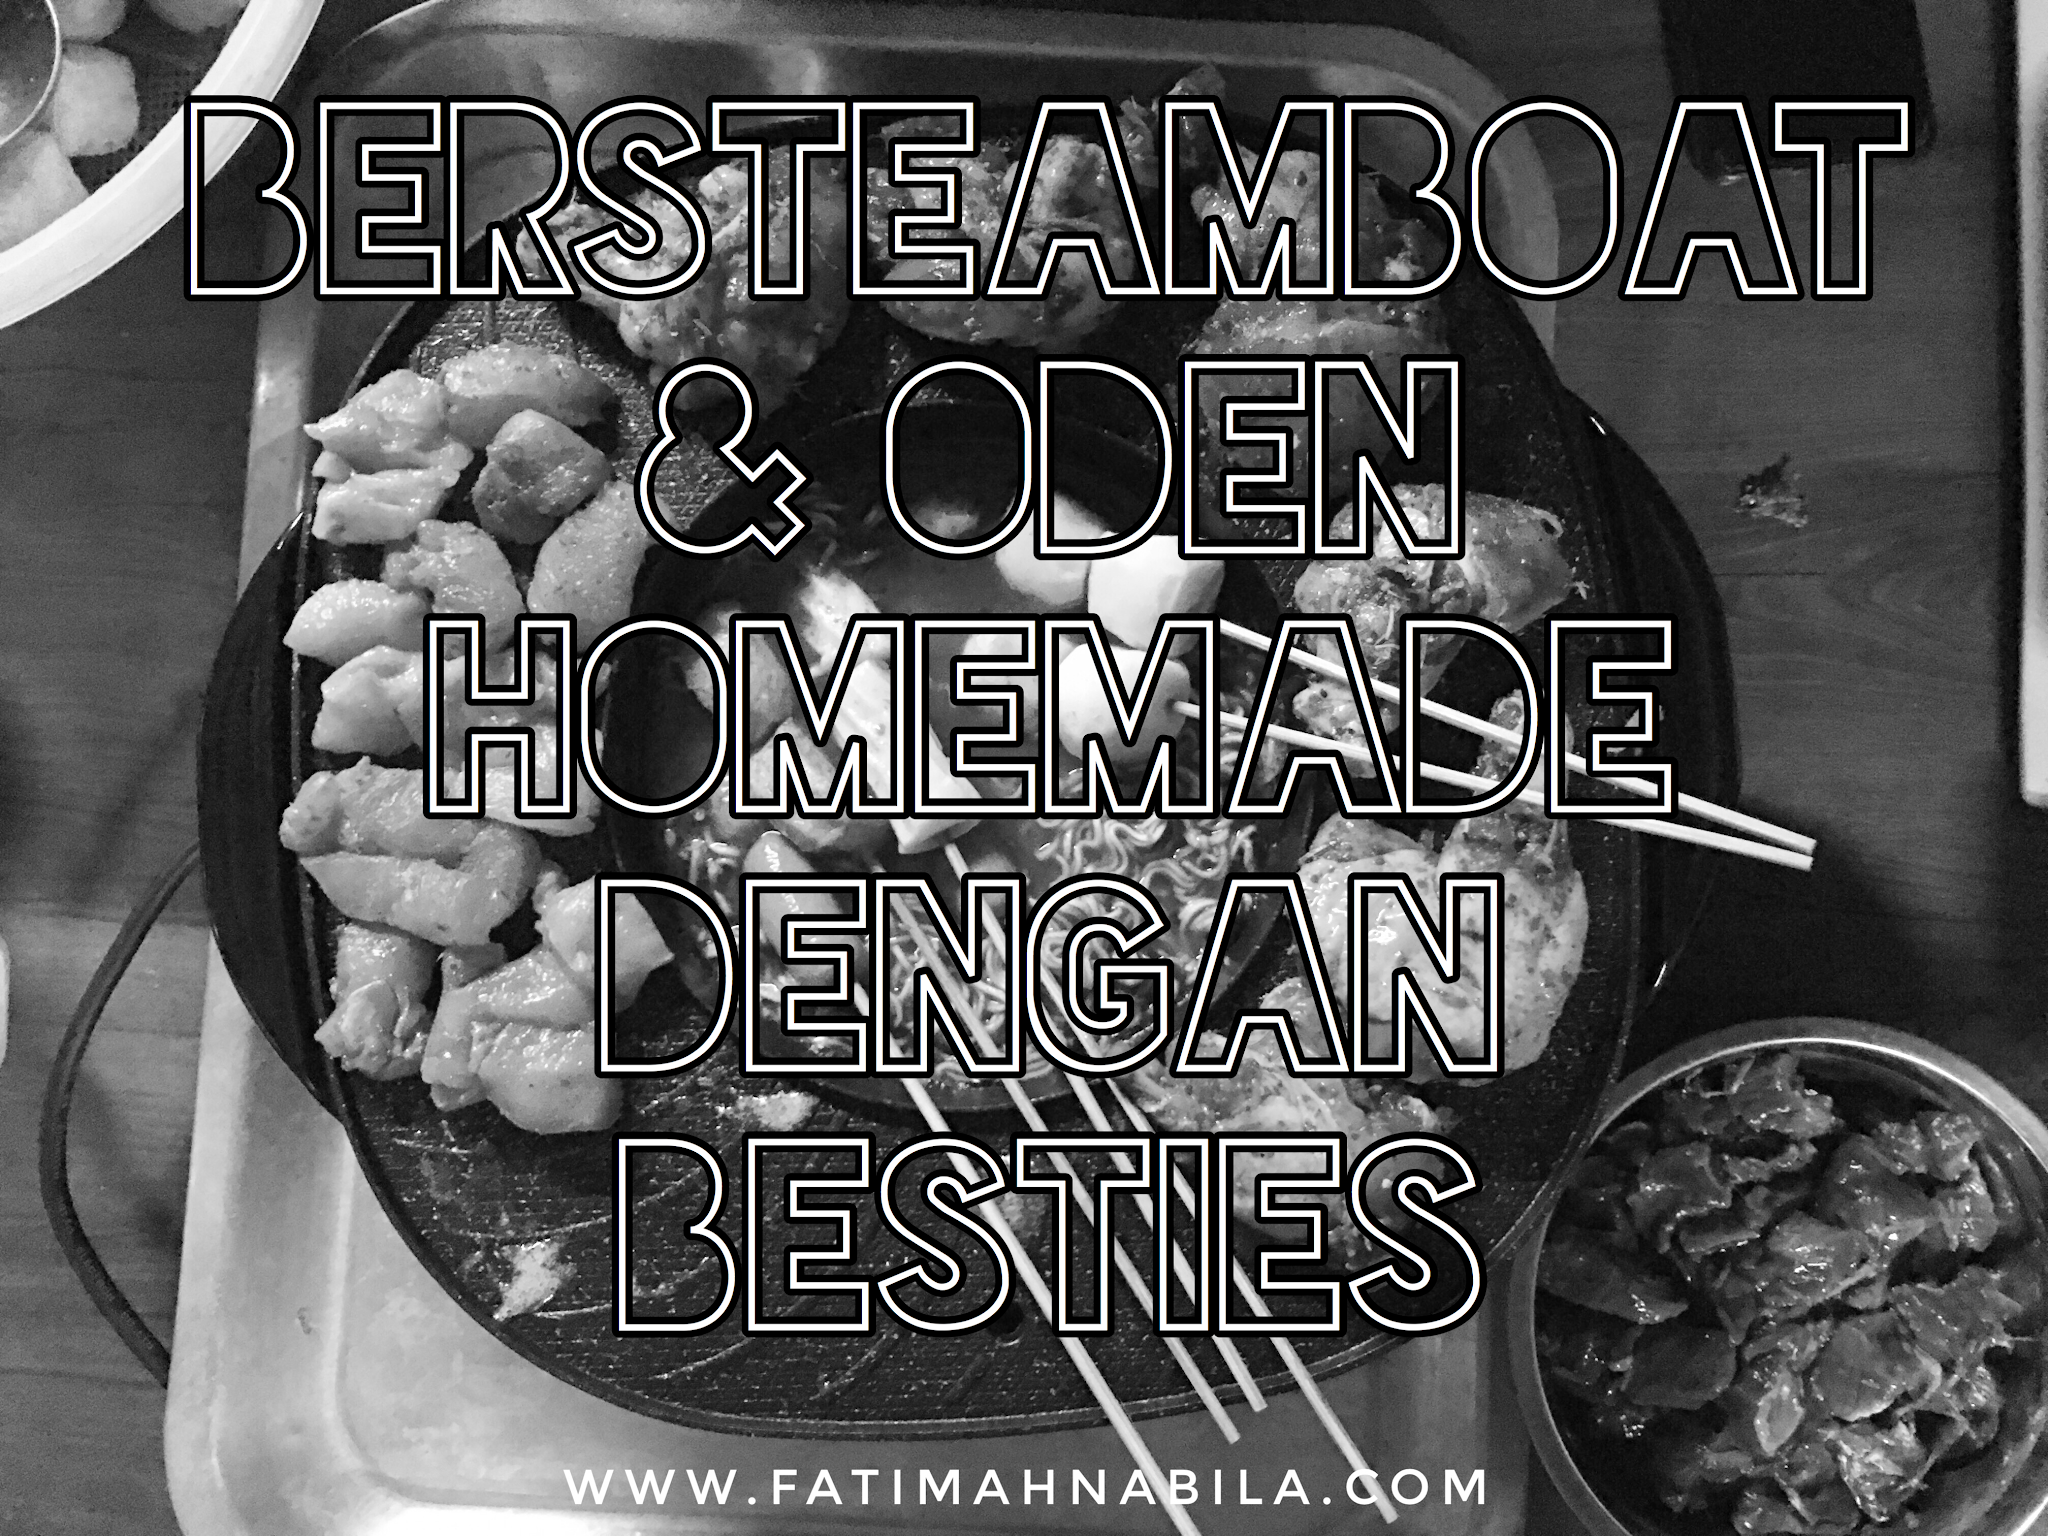 Bersteamboat Oden Homemade Dengan Besties Fatimahnabila